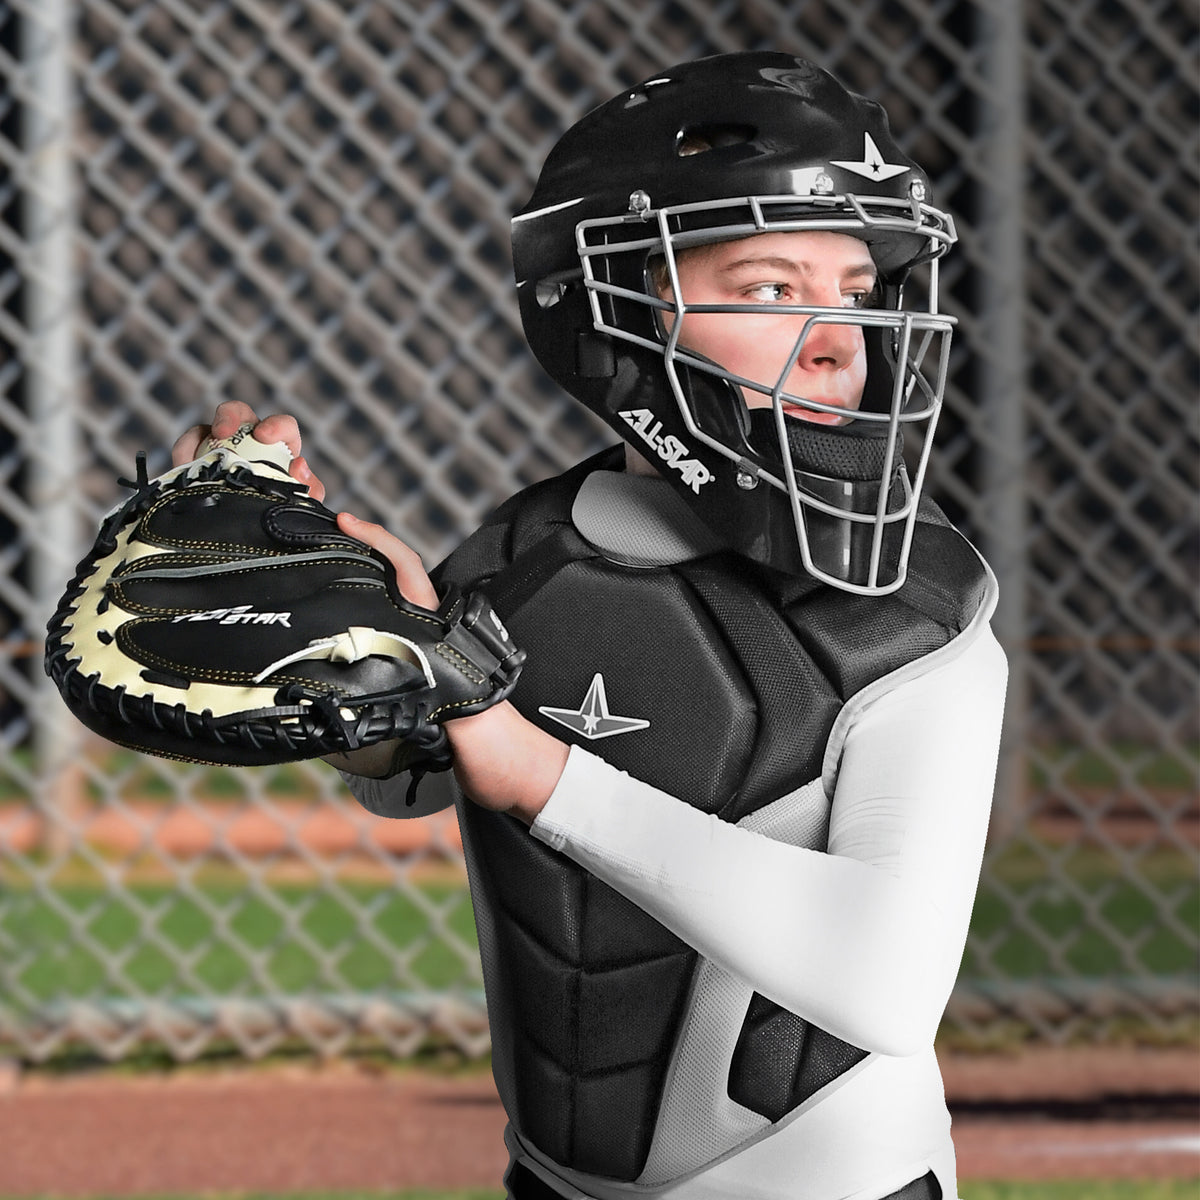 Baseball and Softball Equipment - Apparel